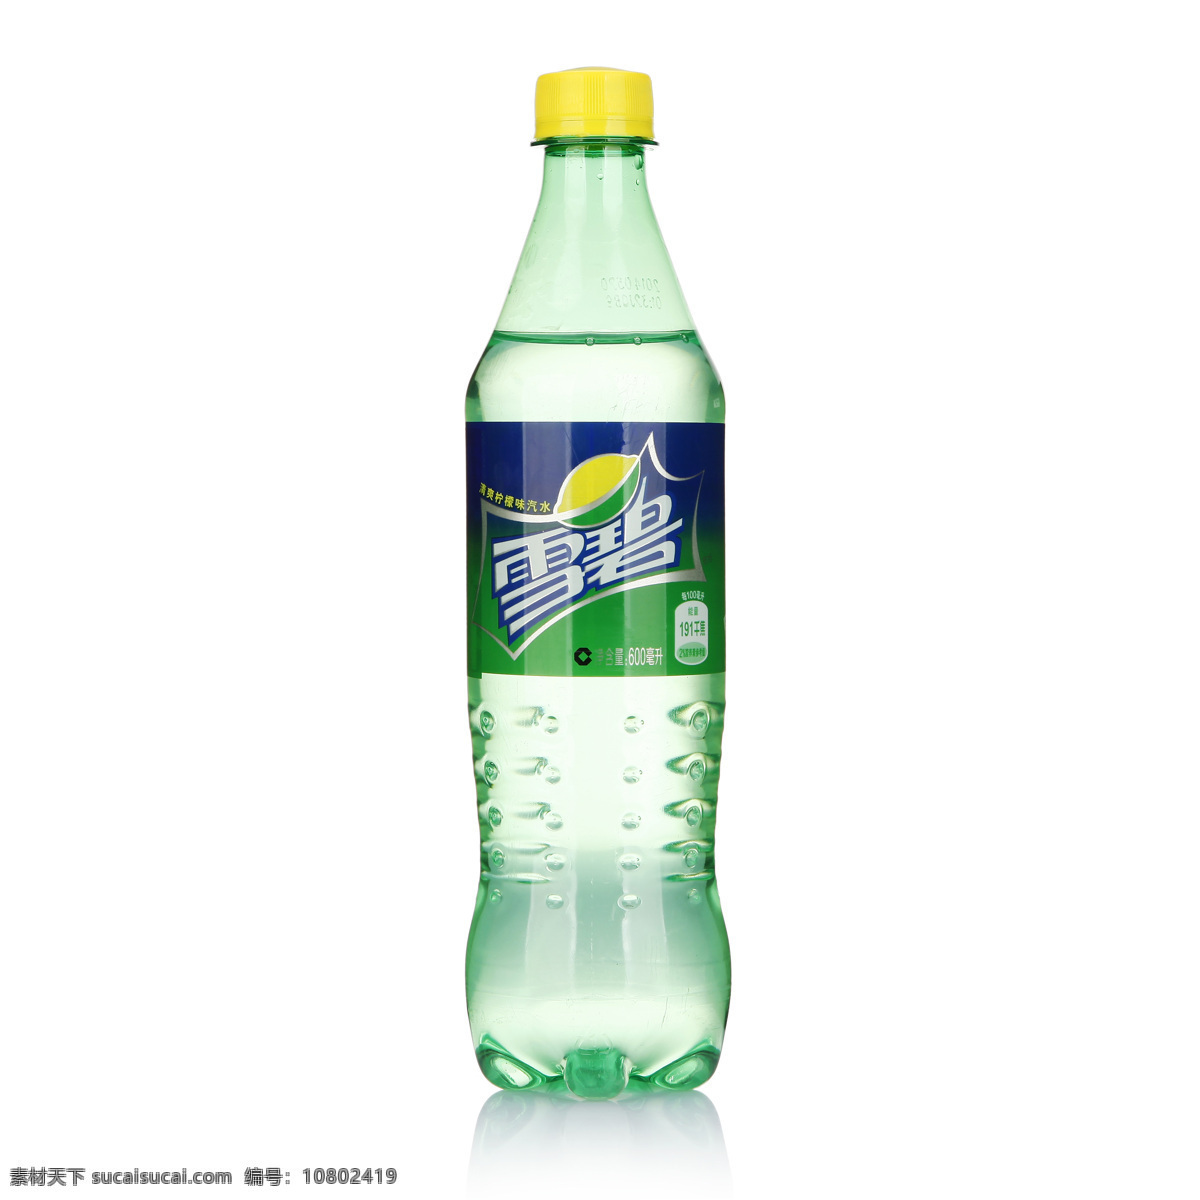 雪碧 饮料 碳酸饮料 易拉罐 产品照 汽水 饮料酒水 餐饮美食